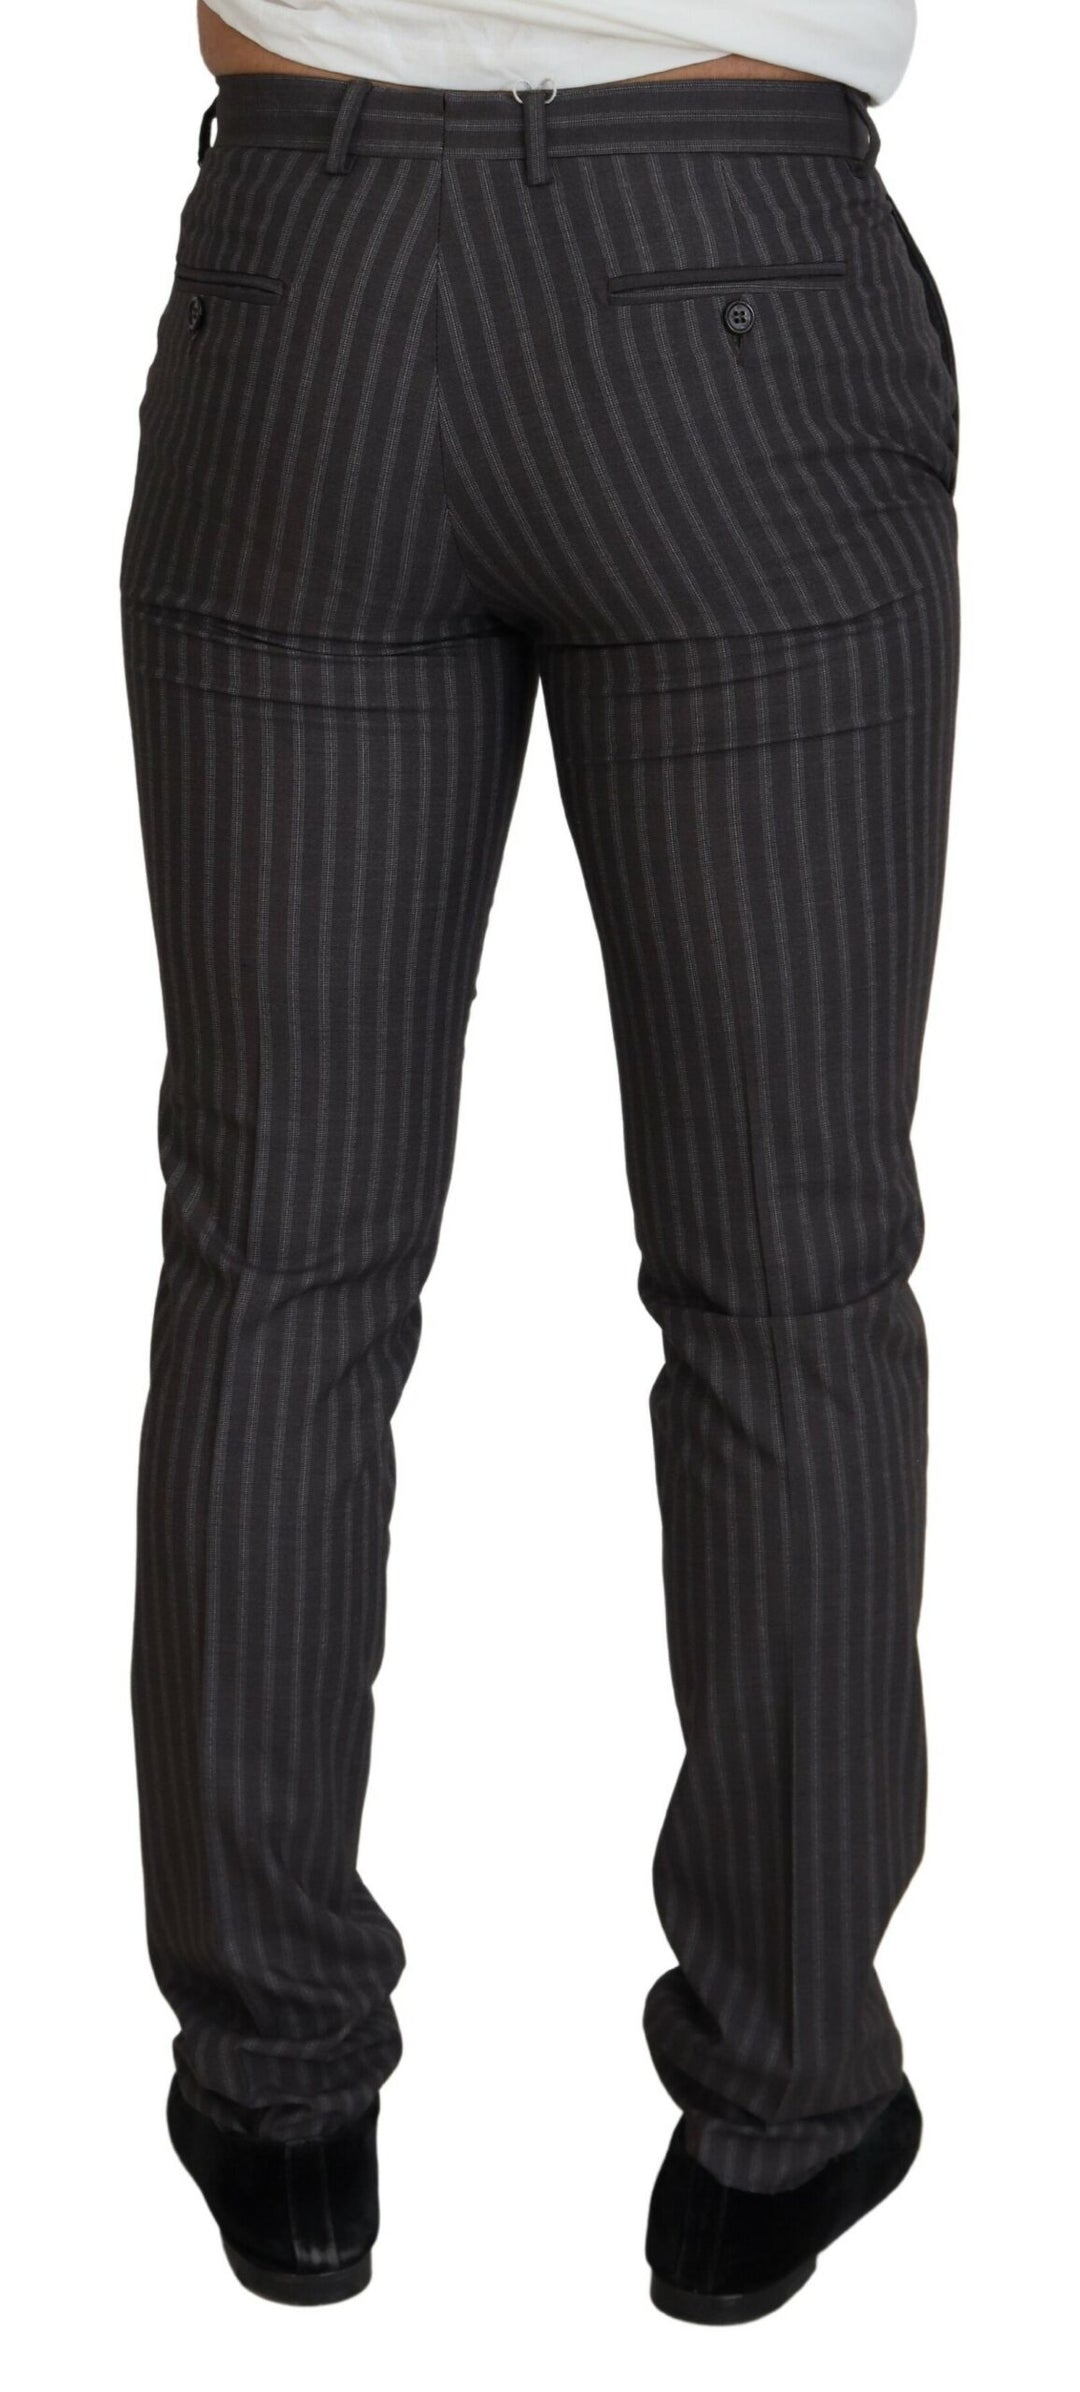 BENCIVENGA Elegant Striped Dress Pants for Men